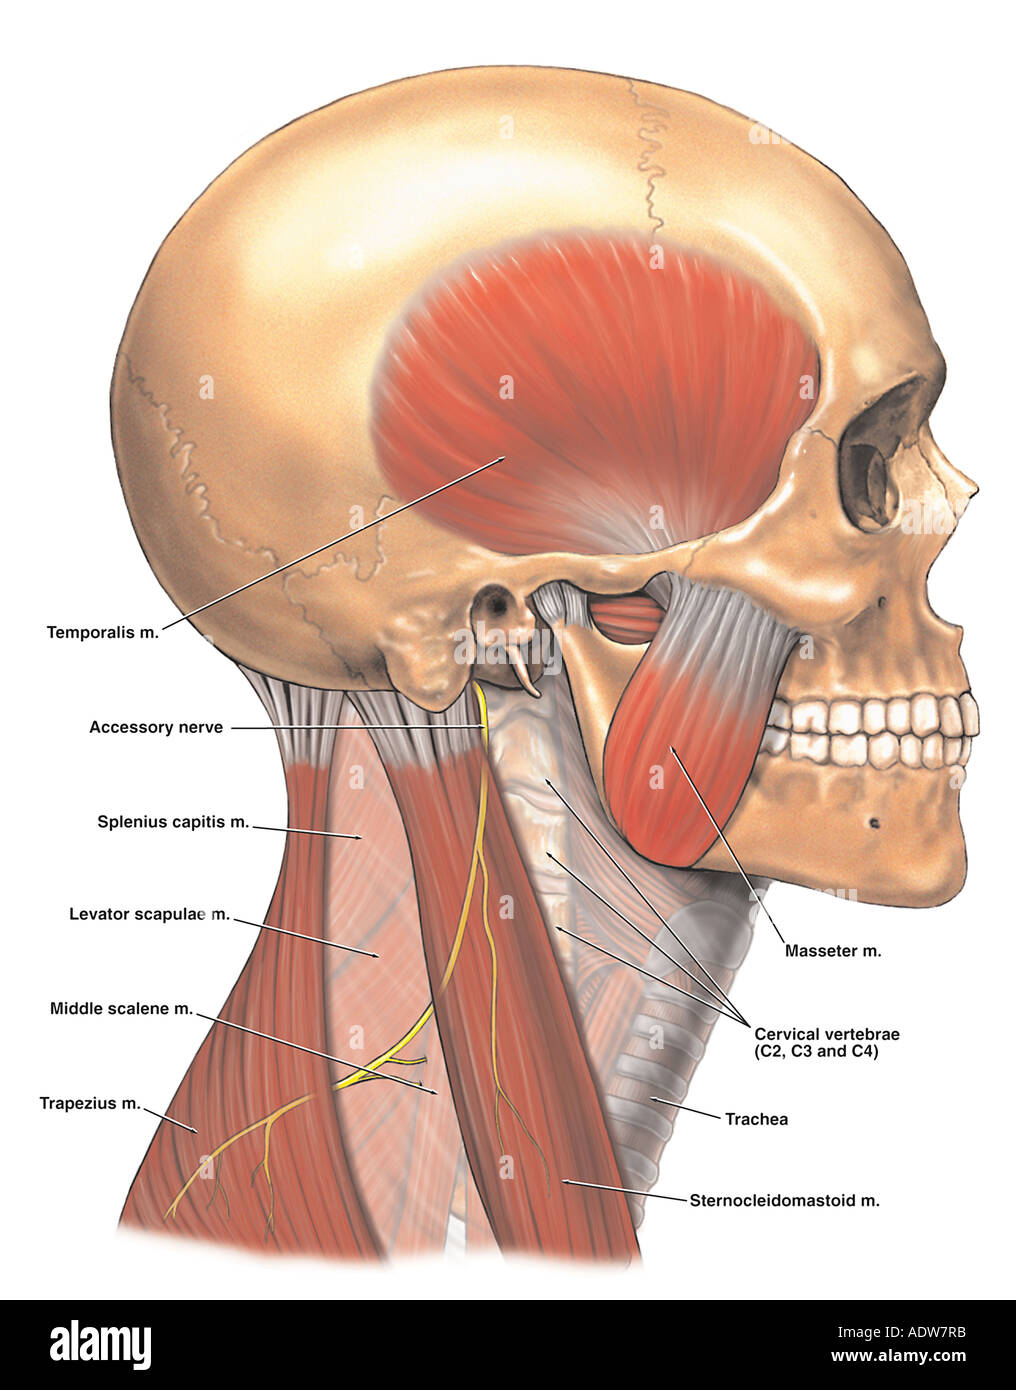 Anatomie des Nervus spinale Zubehör Stockfotografie   Alamy